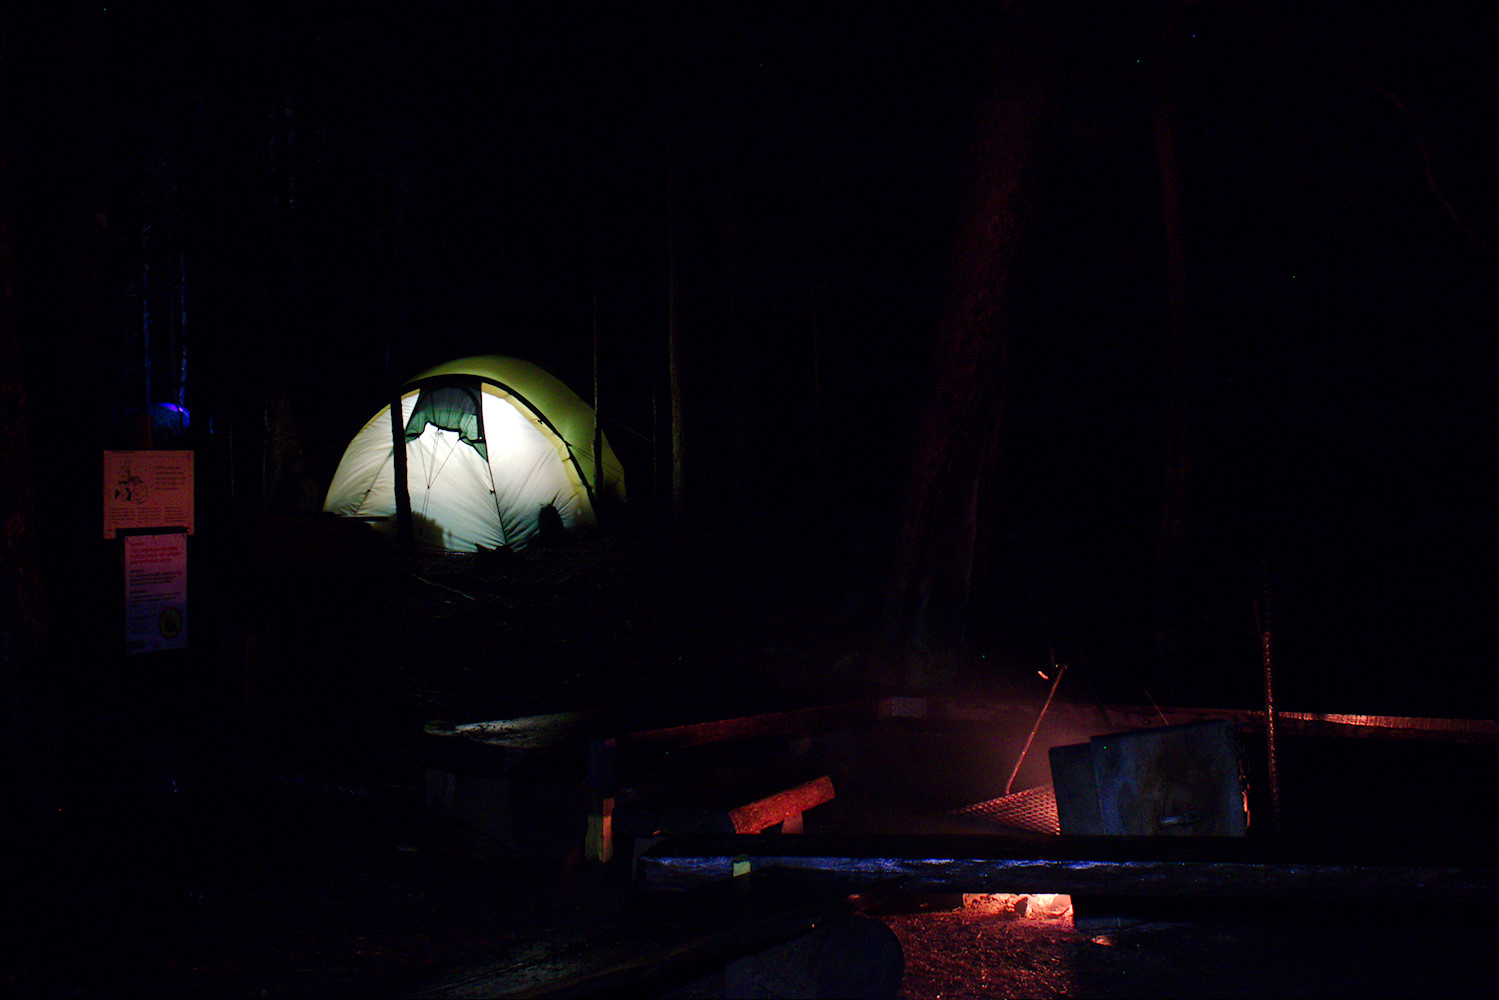 Luutasuon nuotiopaikka ja valaistu teltta